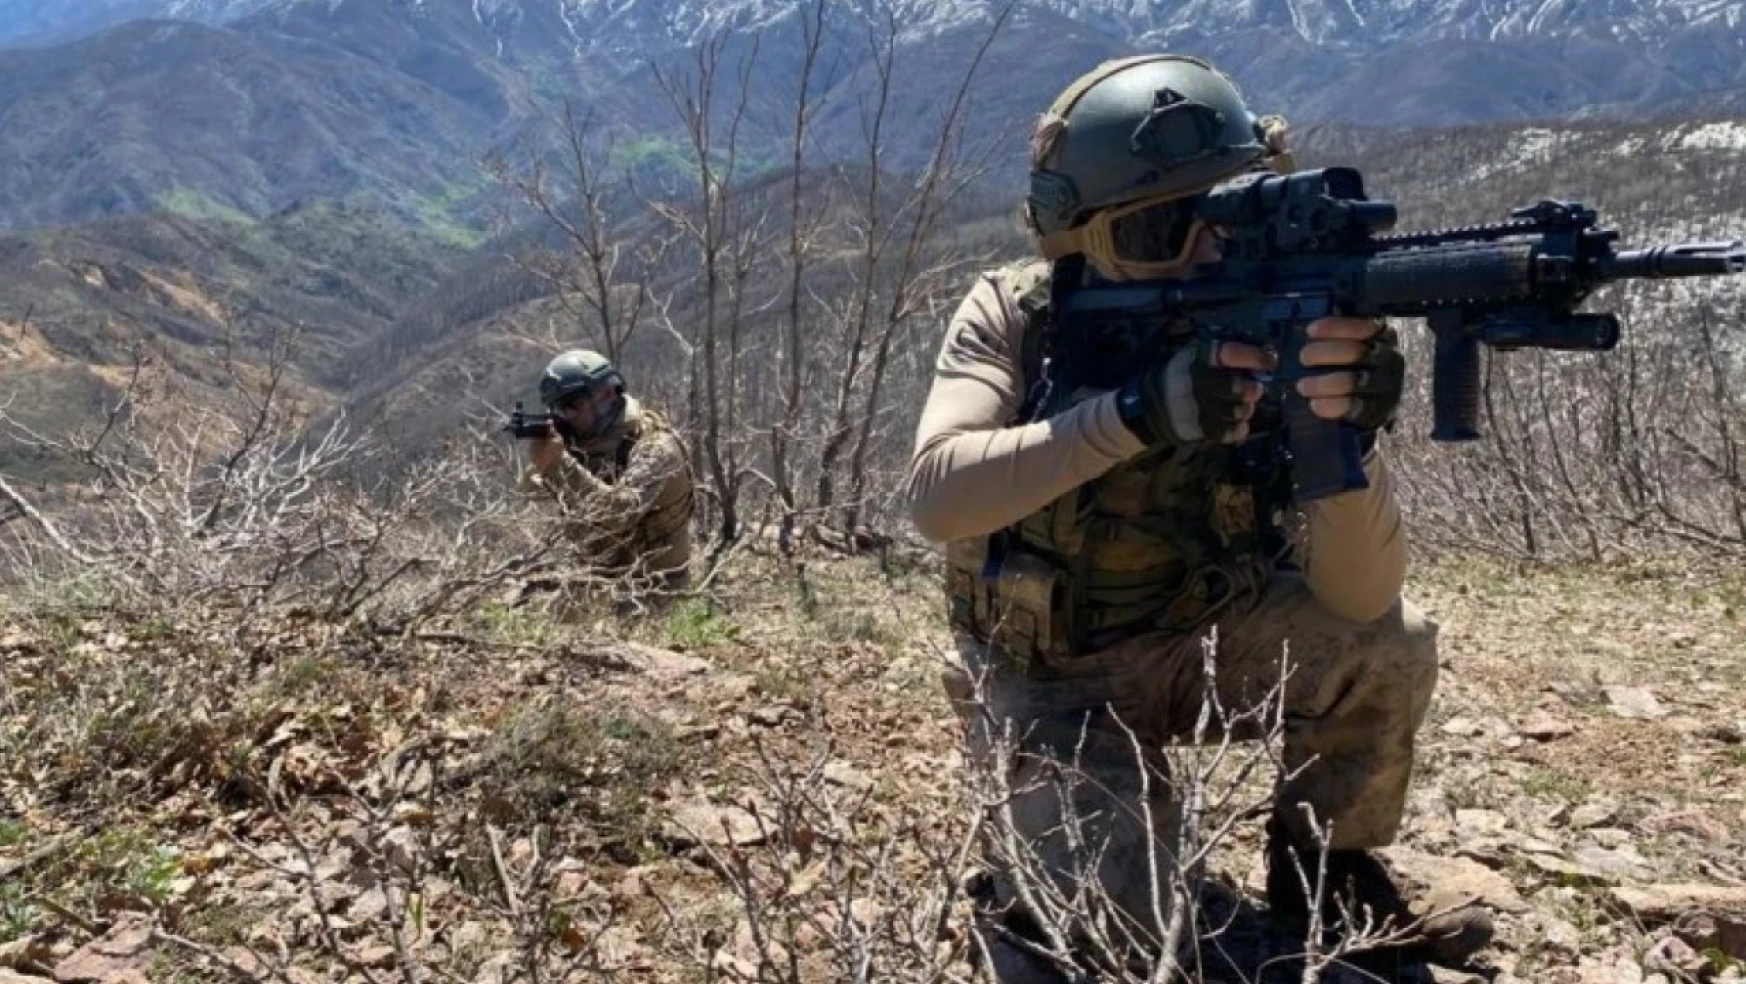 Milli Savunma Bakanlığı sınırlarda terör örgütlerine göz açtırmıyor